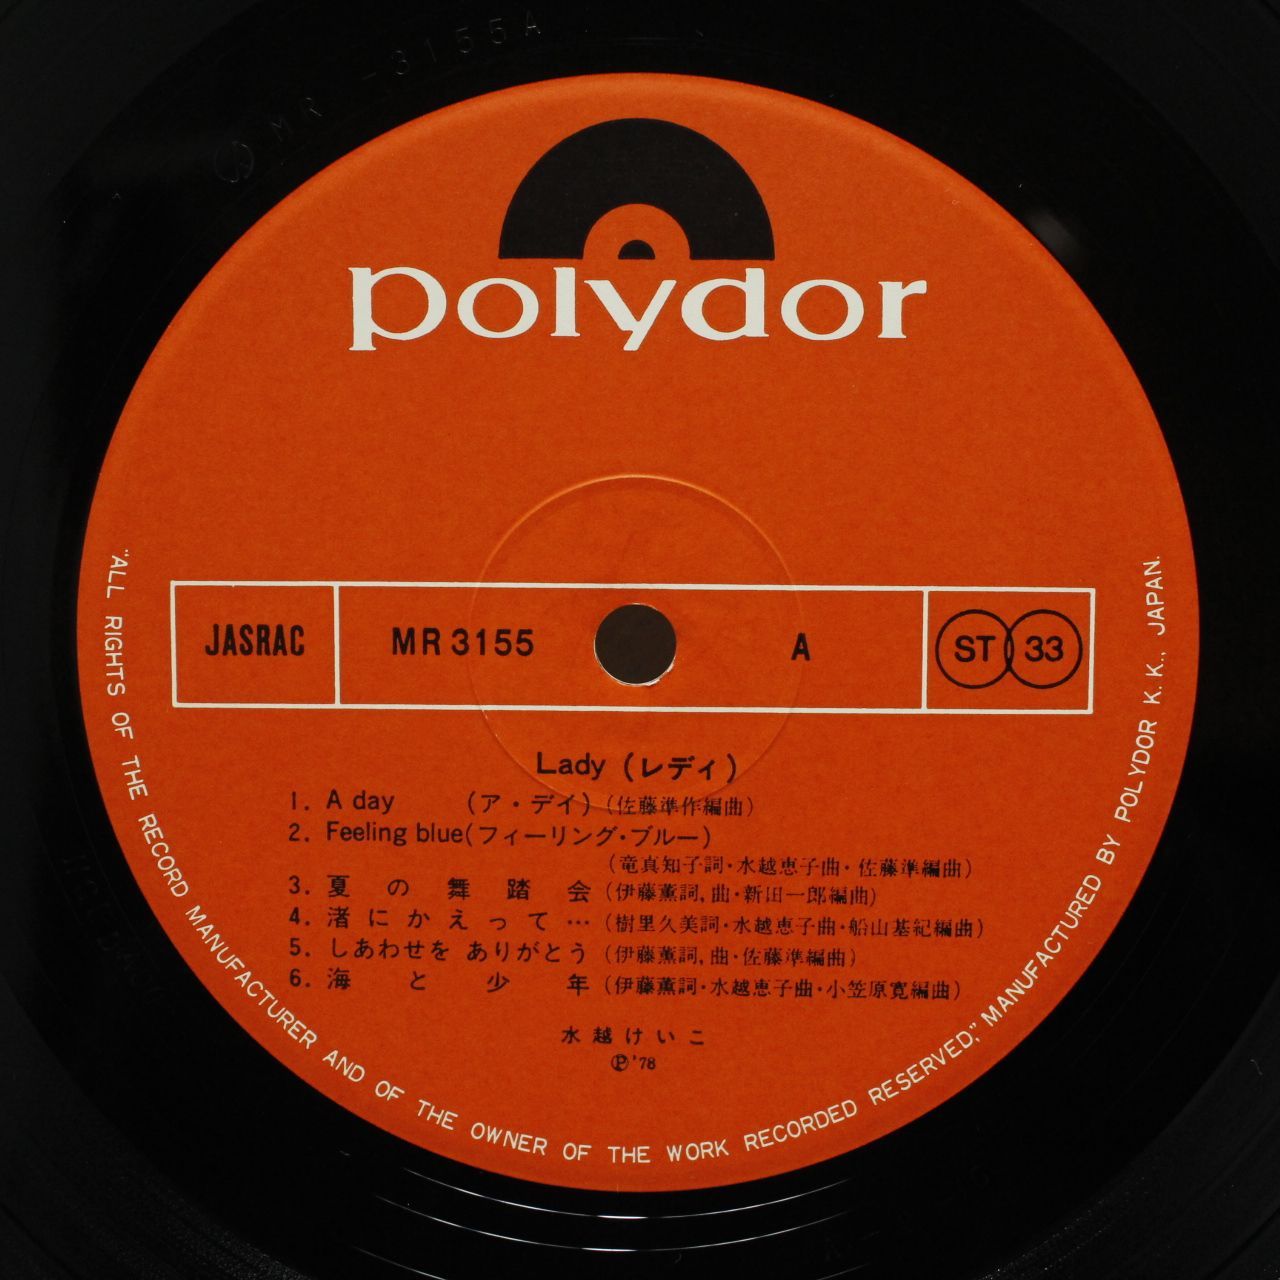 水越けいこ / Lady レコード - MOKUME RECORDS - メルカリ